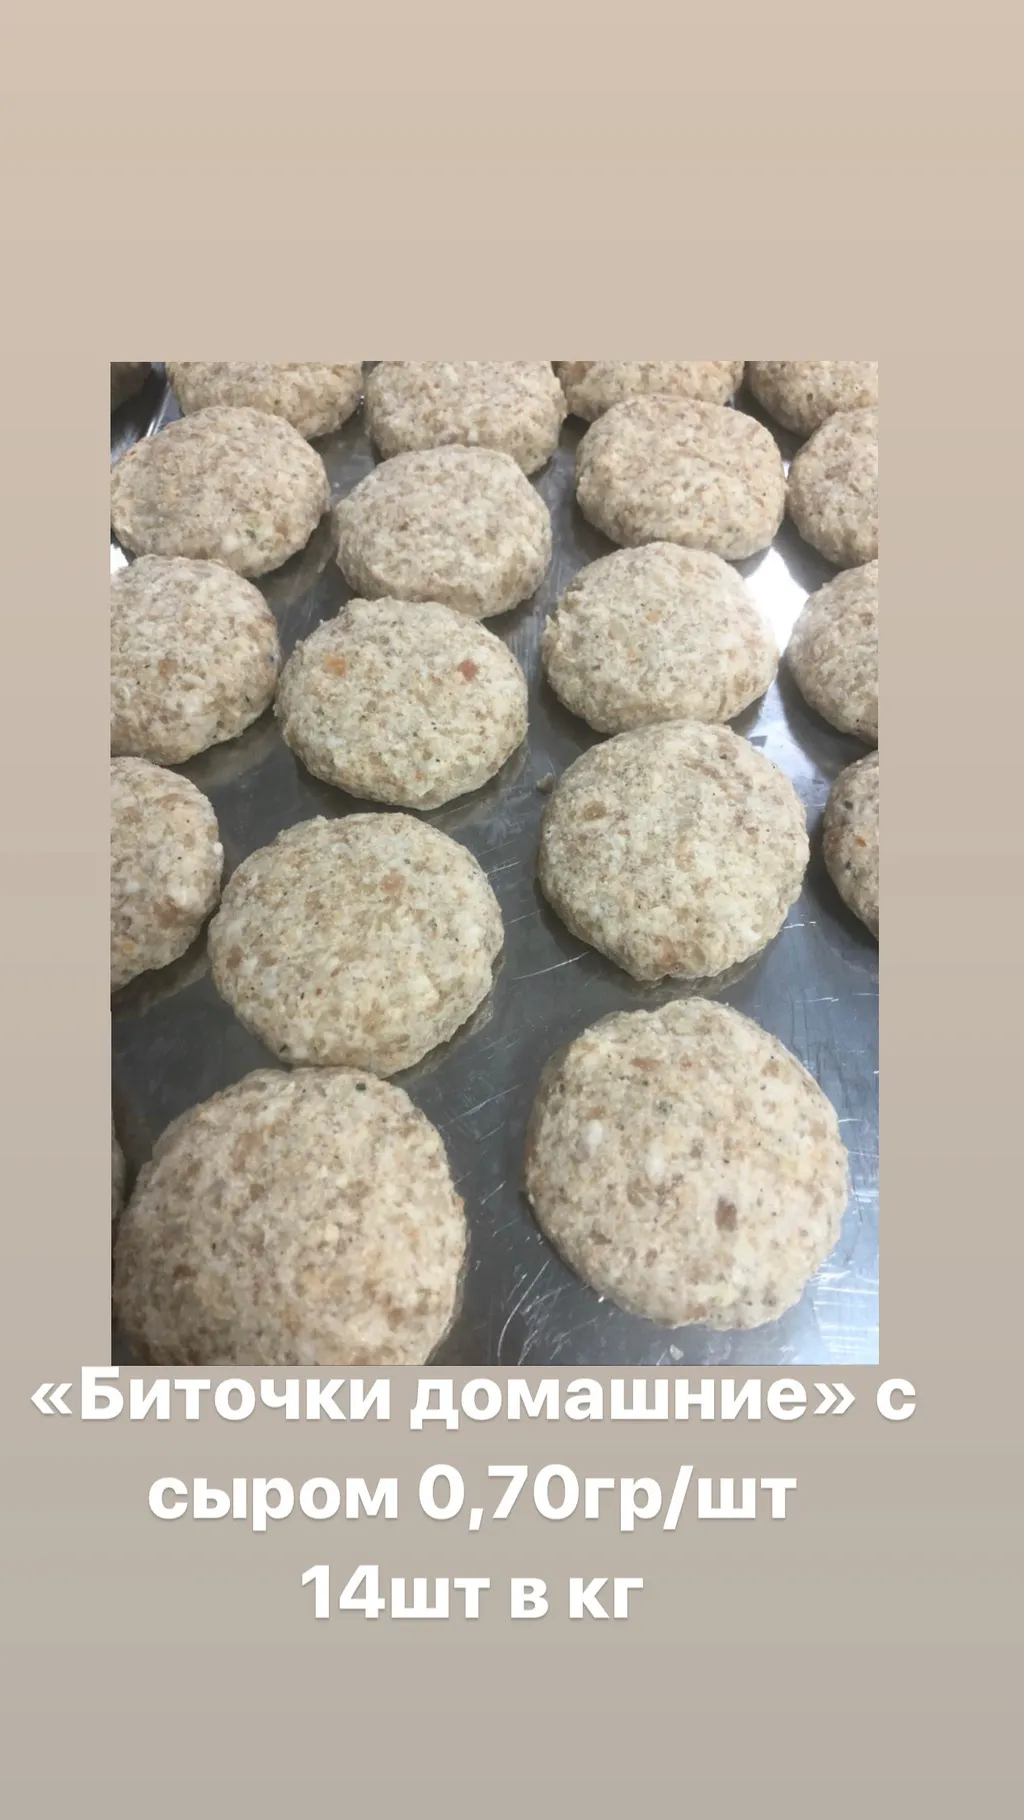 мясные полуфабрикаты ручной лепки в Усть-Лабинске 11